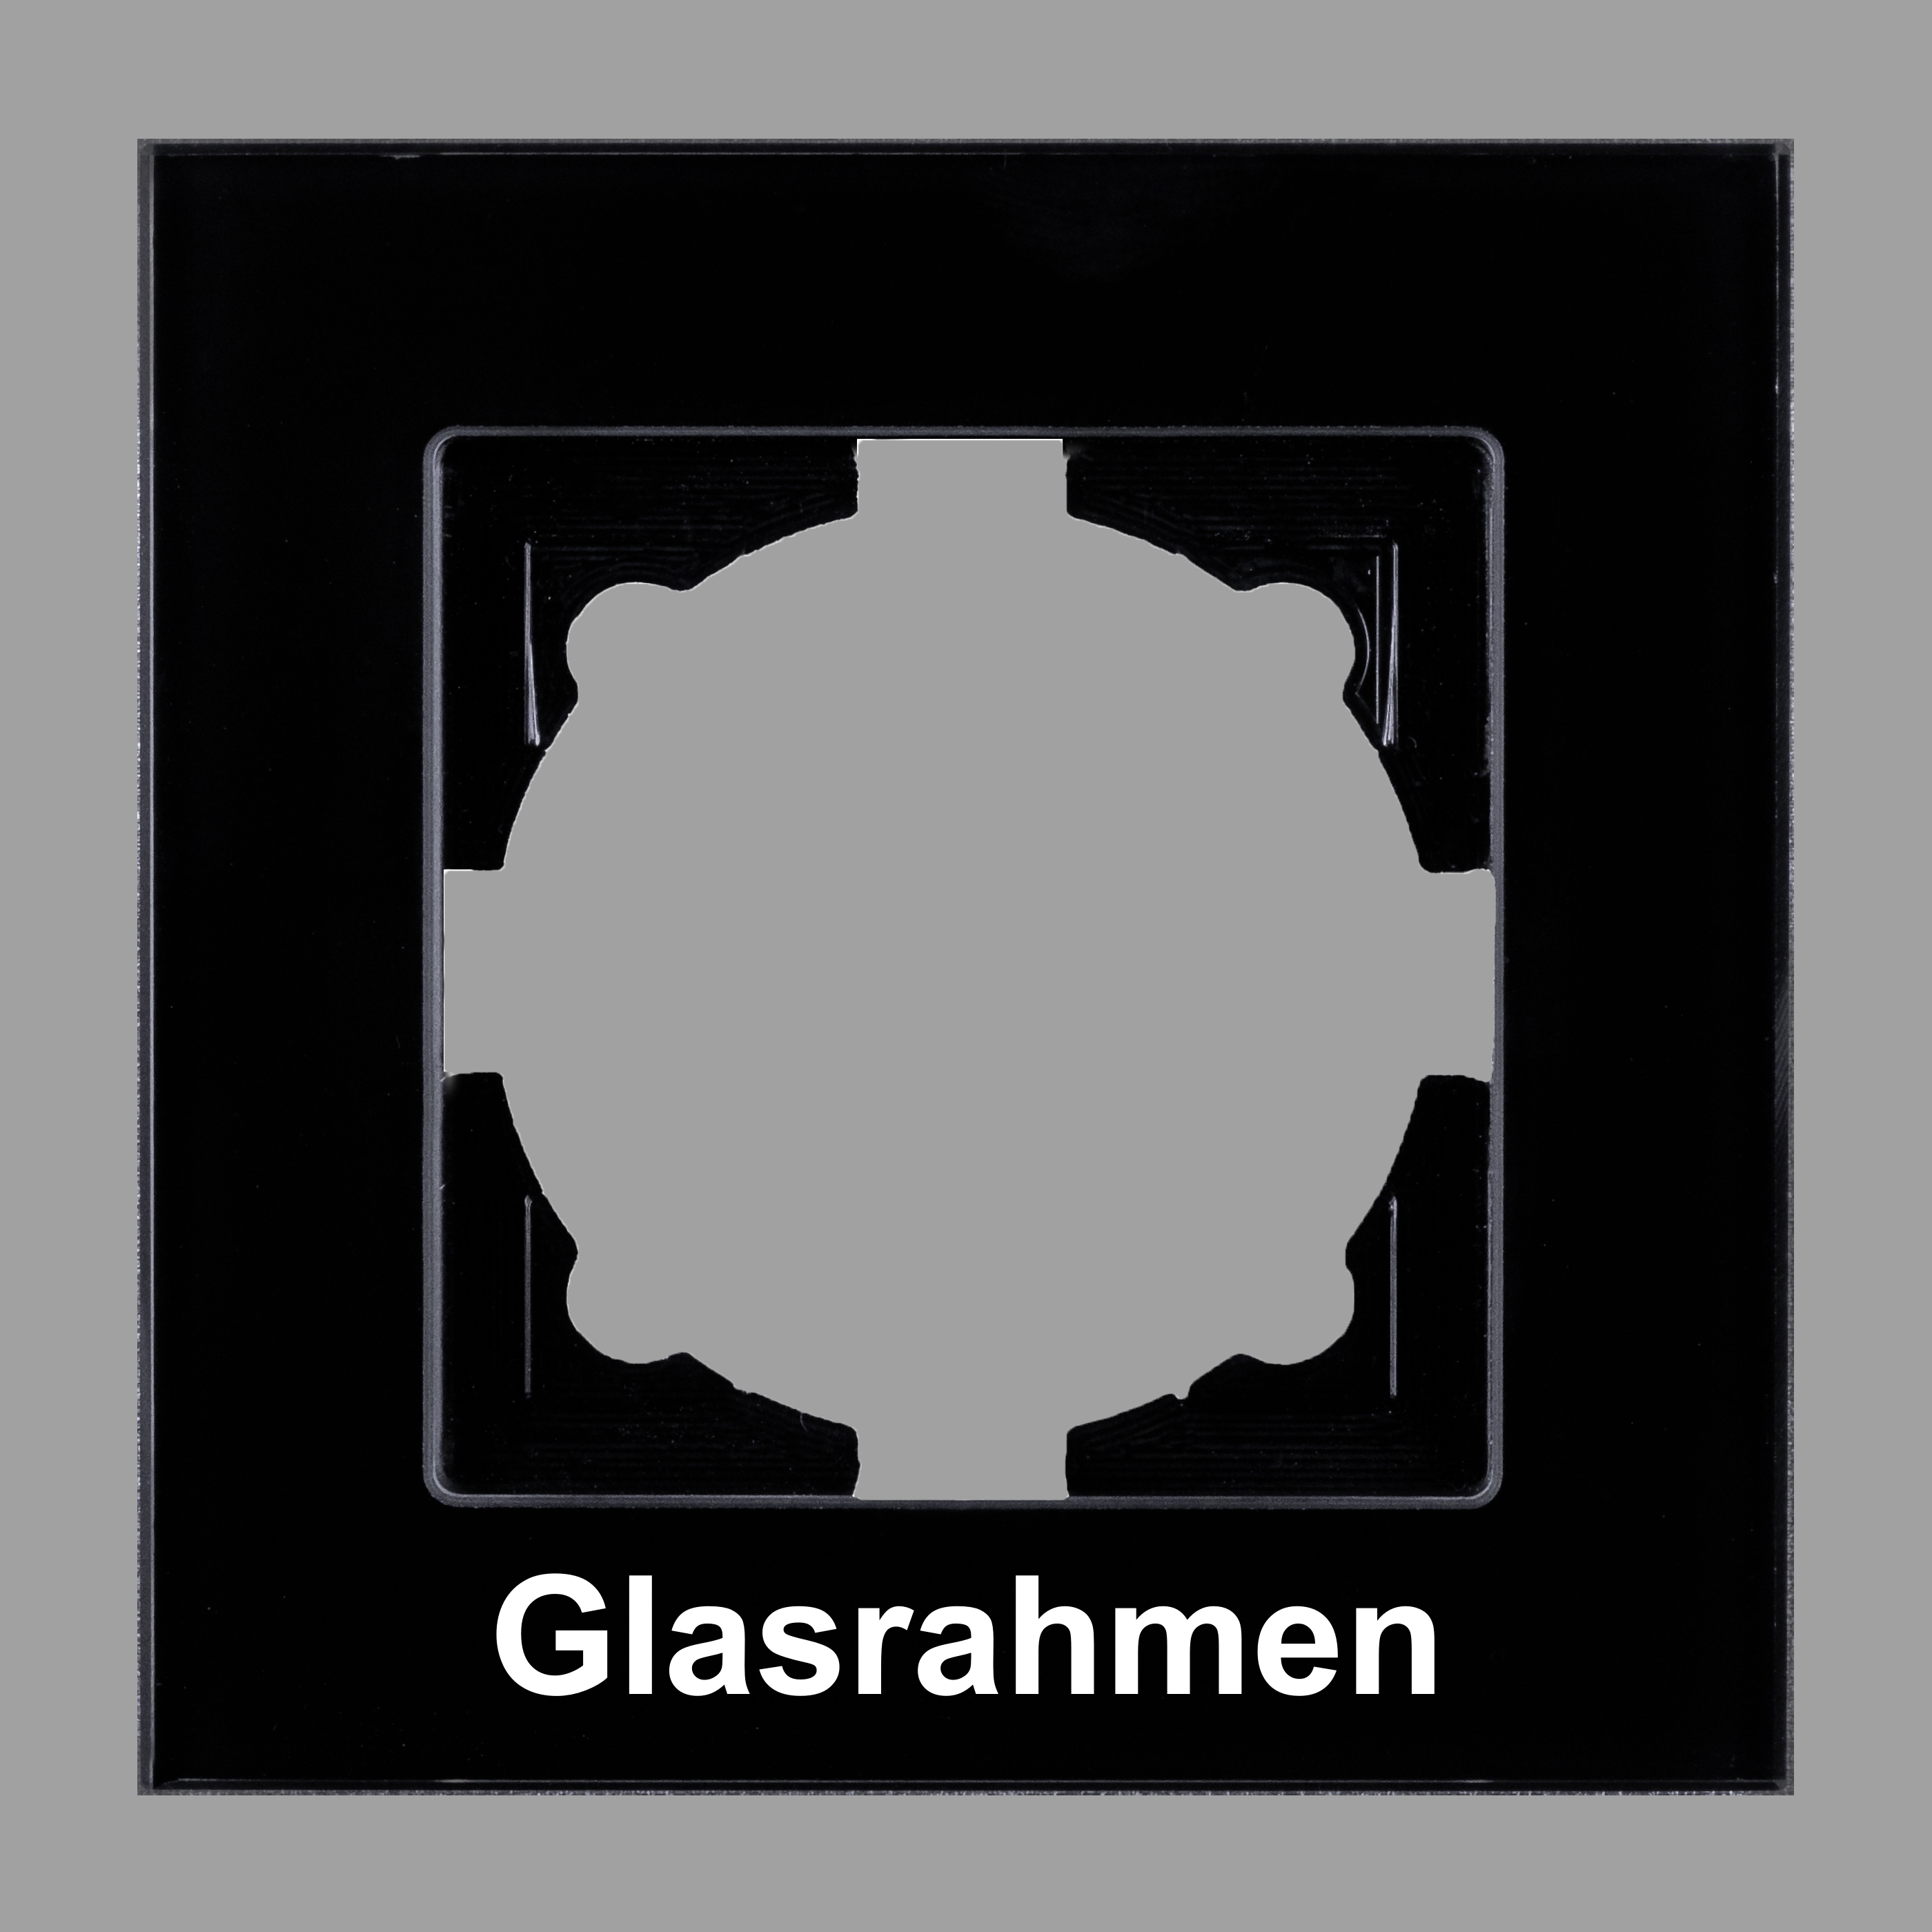 Visage 0128340140GL, 1-fach Glas-Rahmen für 1 Steckdose / Schalter  Schwarz, Erkelenz